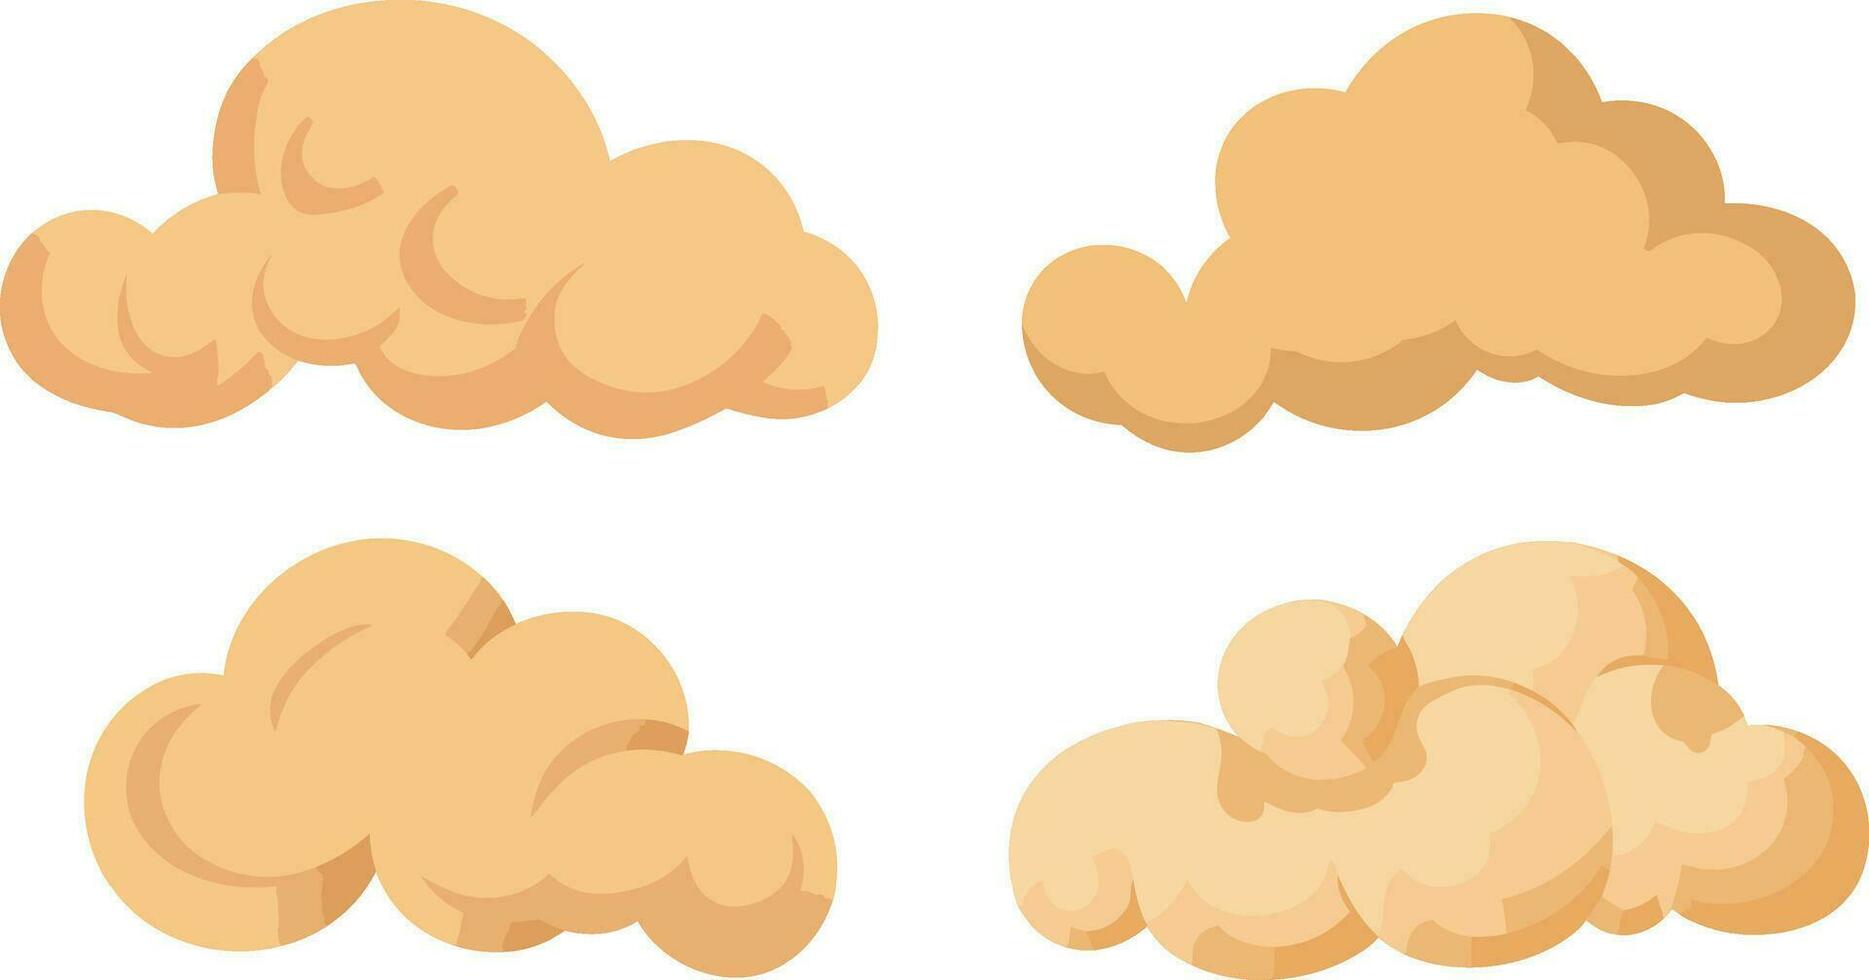 tecknad serie moln på en vit bakgrund. vektor illustration i platt design.